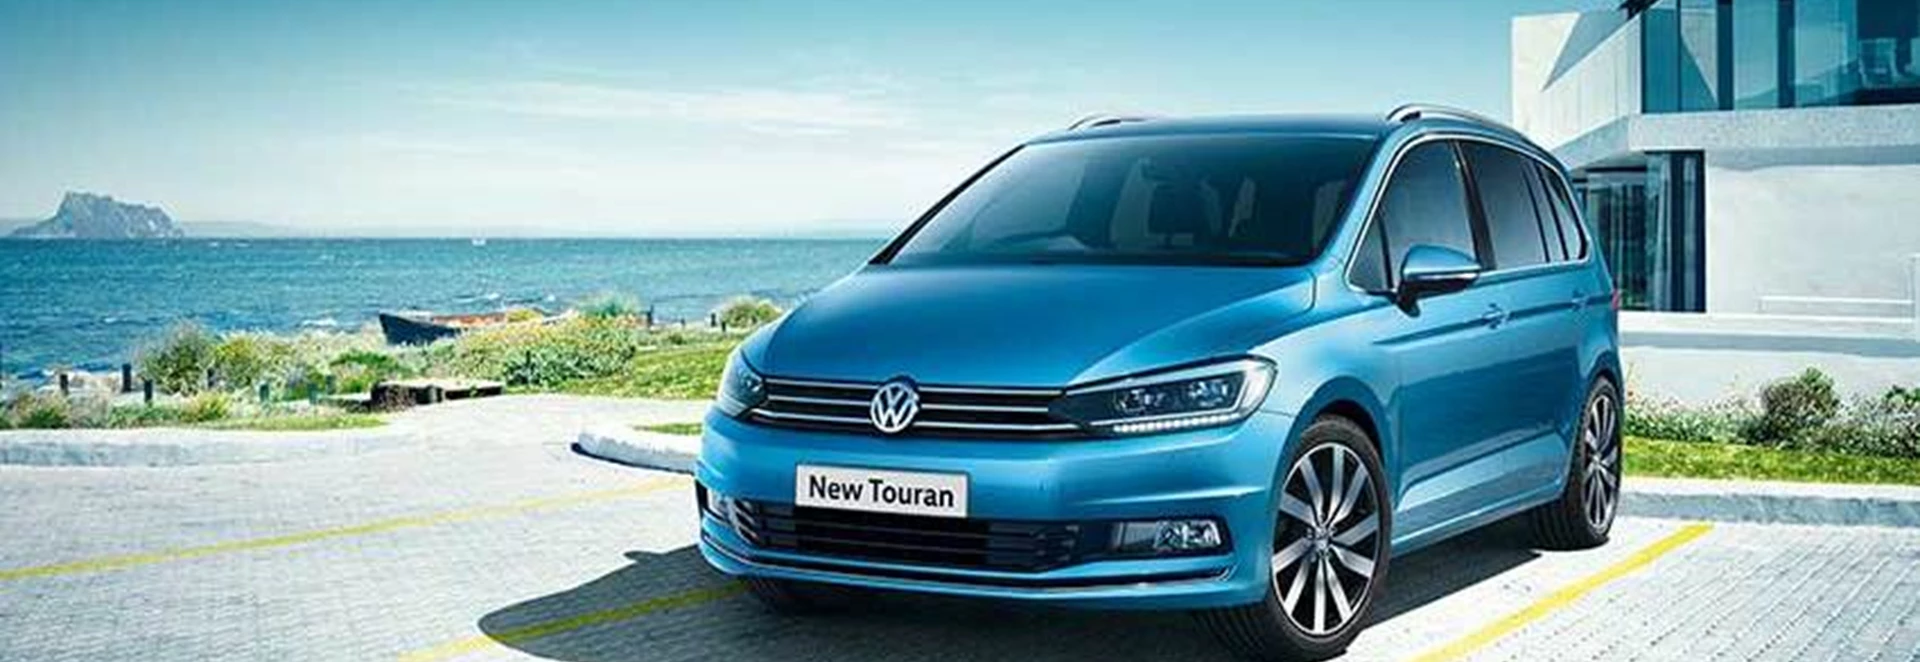 New Volkswagen Touran now in showrooms